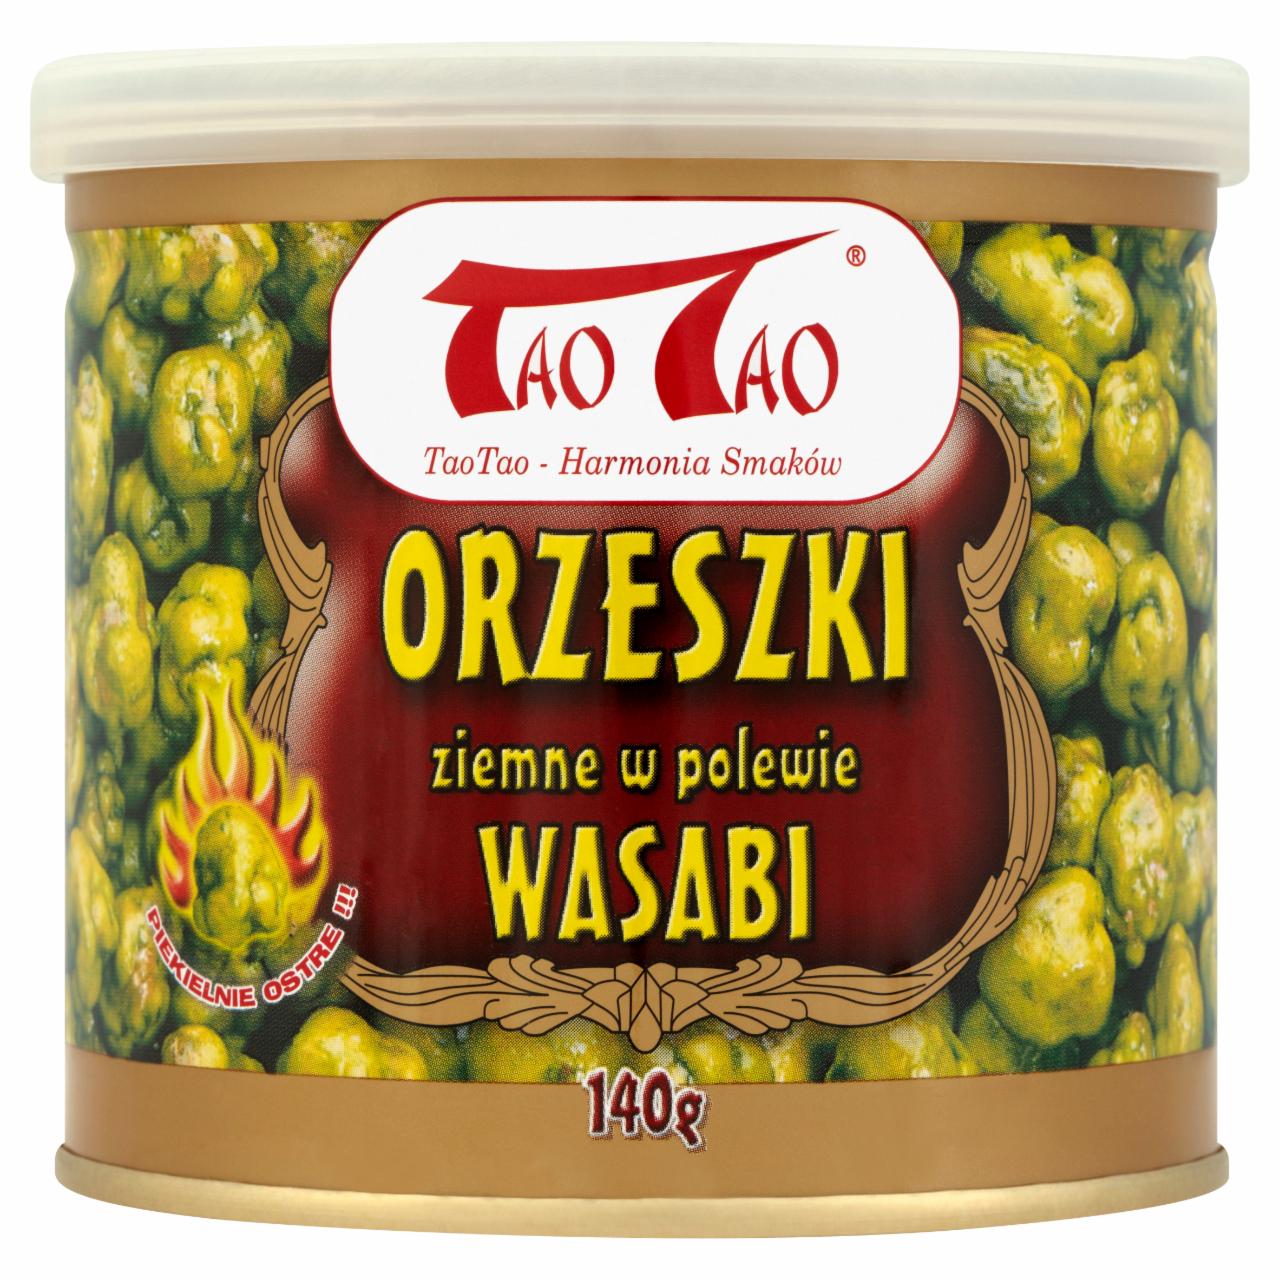 Zdjęcia - Tao Tao Orzeszki ziemne w polewie wasabi 140 g